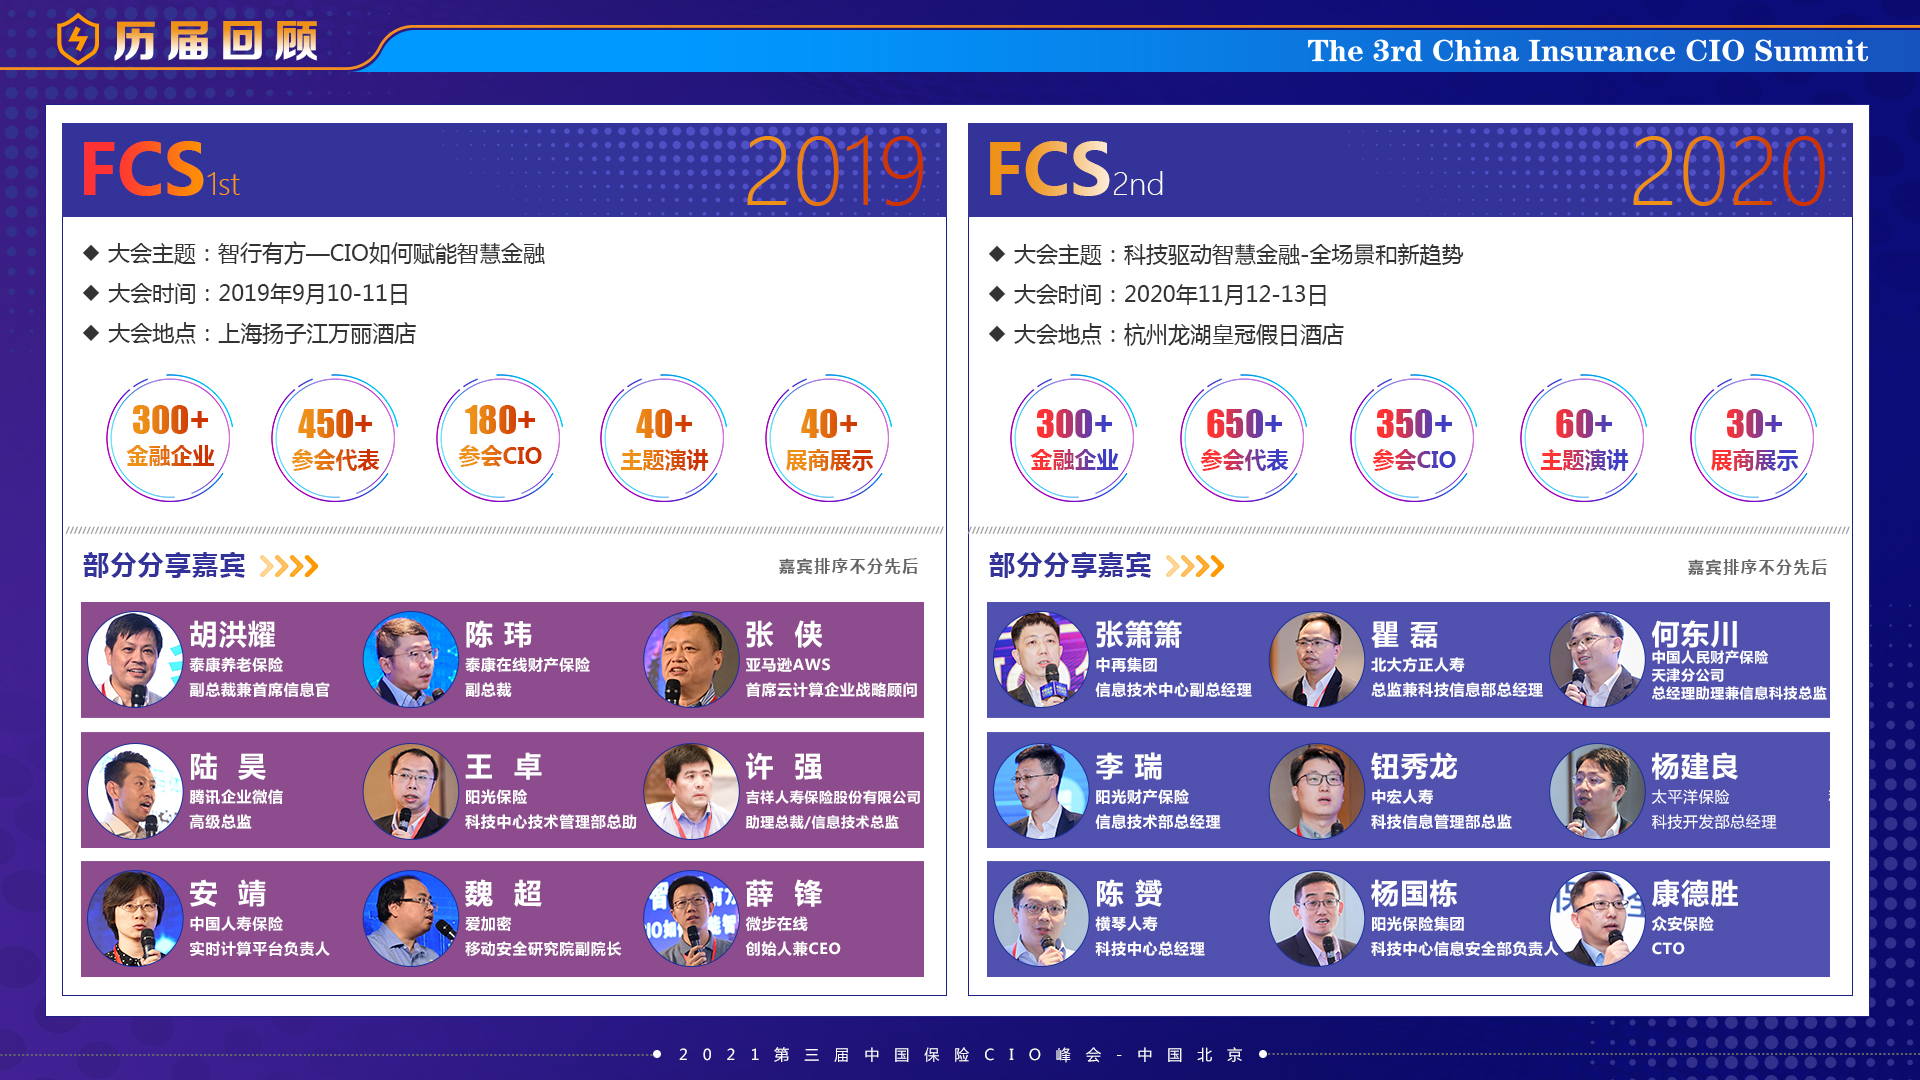 FCS 2021第三届中国保险CIO峰会